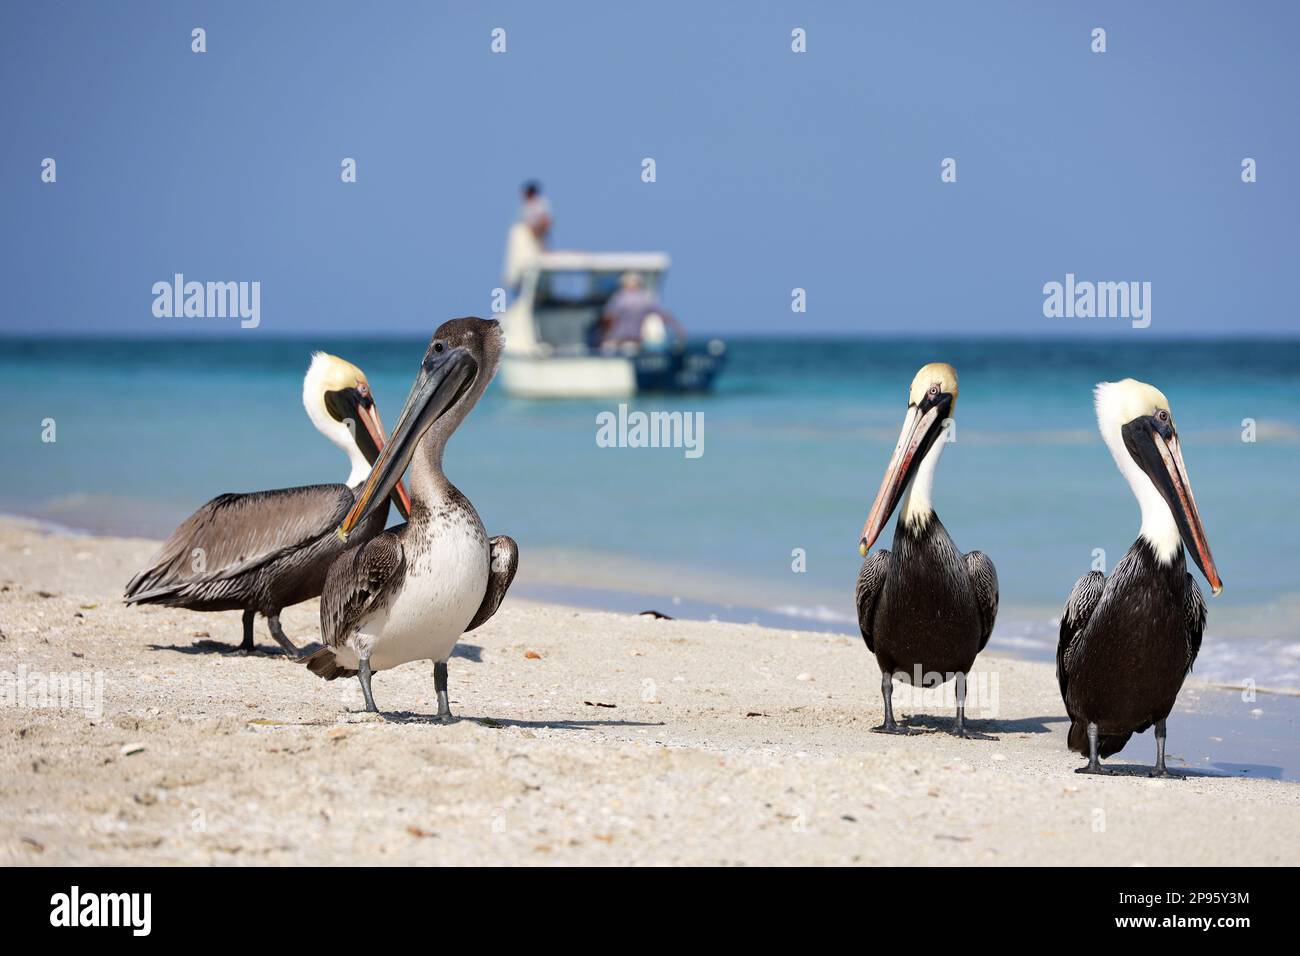 Pelikane, die sich auf dem Sand des Atlantikstrands vor dem Hintergrund eines Fischerboots ausruhen. Wilde Vögel auf blauem Wellenhintergrund Stockfoto